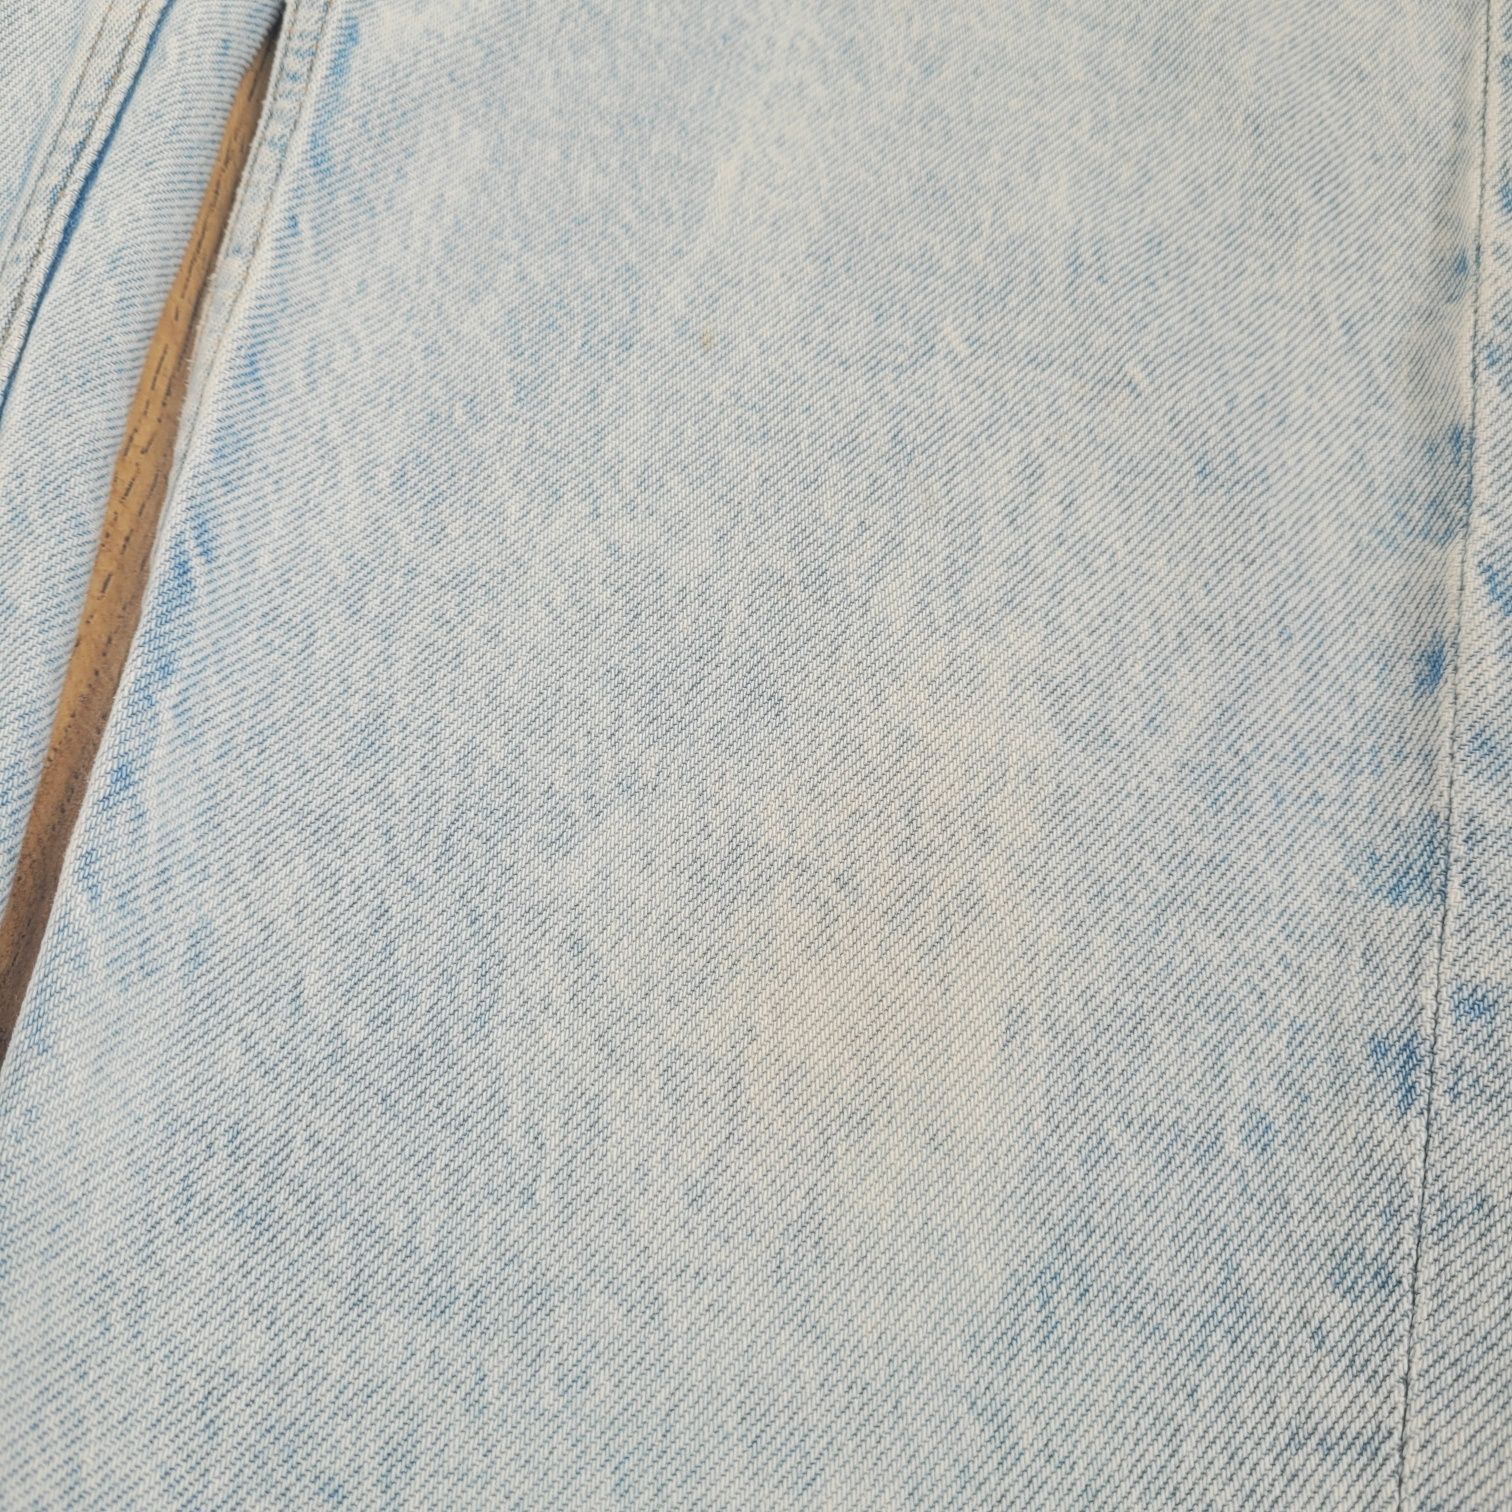 Spodnie zara mom fit jeans 32 jasnoniebieskie